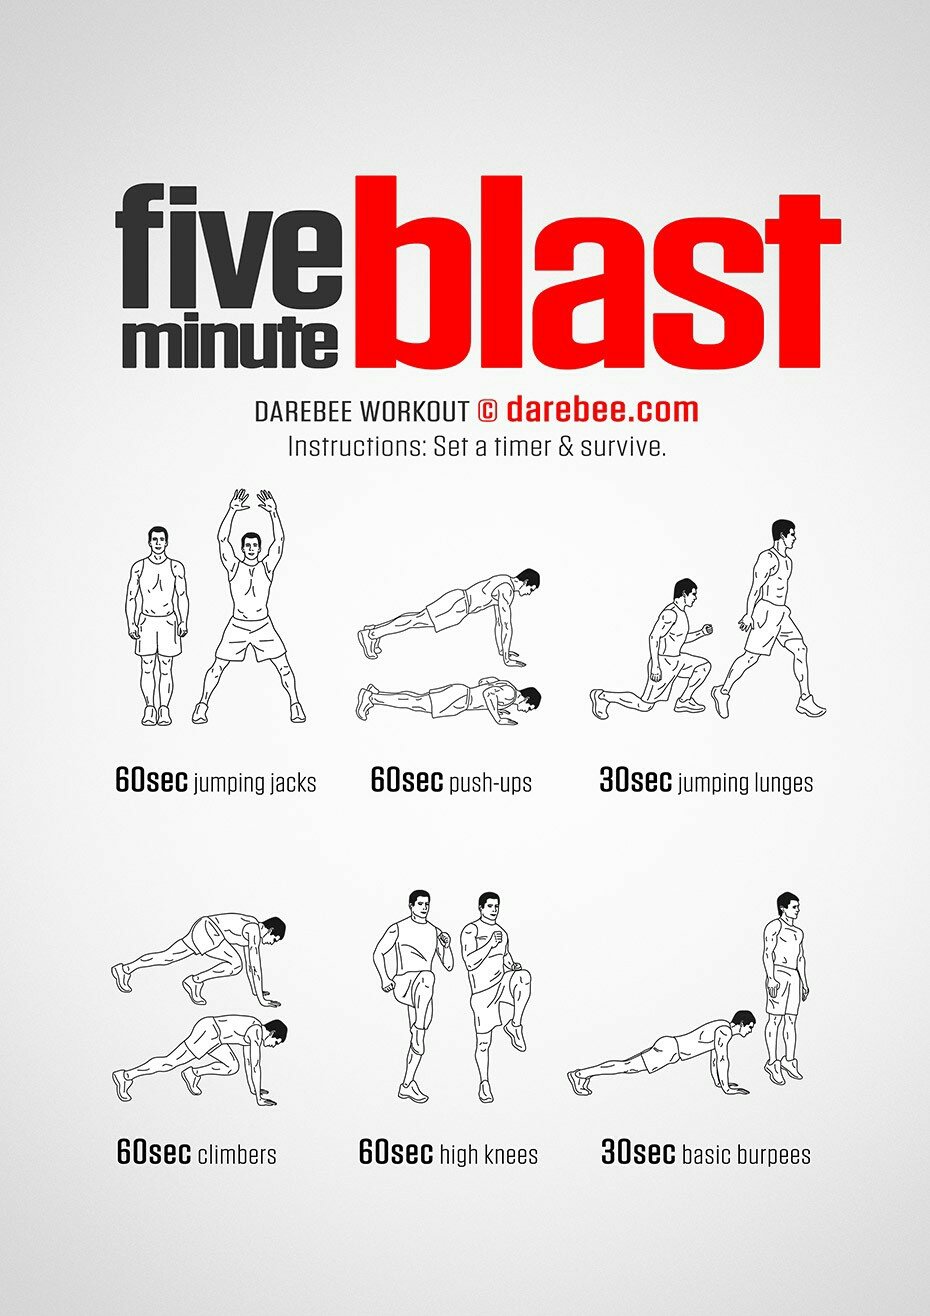 DAREBEE on Twitter: "NEW: Minute Blast Workout https://t.co/vksVm1UqiP #darebee #fitness https://t.co/HD5NvtA7SQ" /